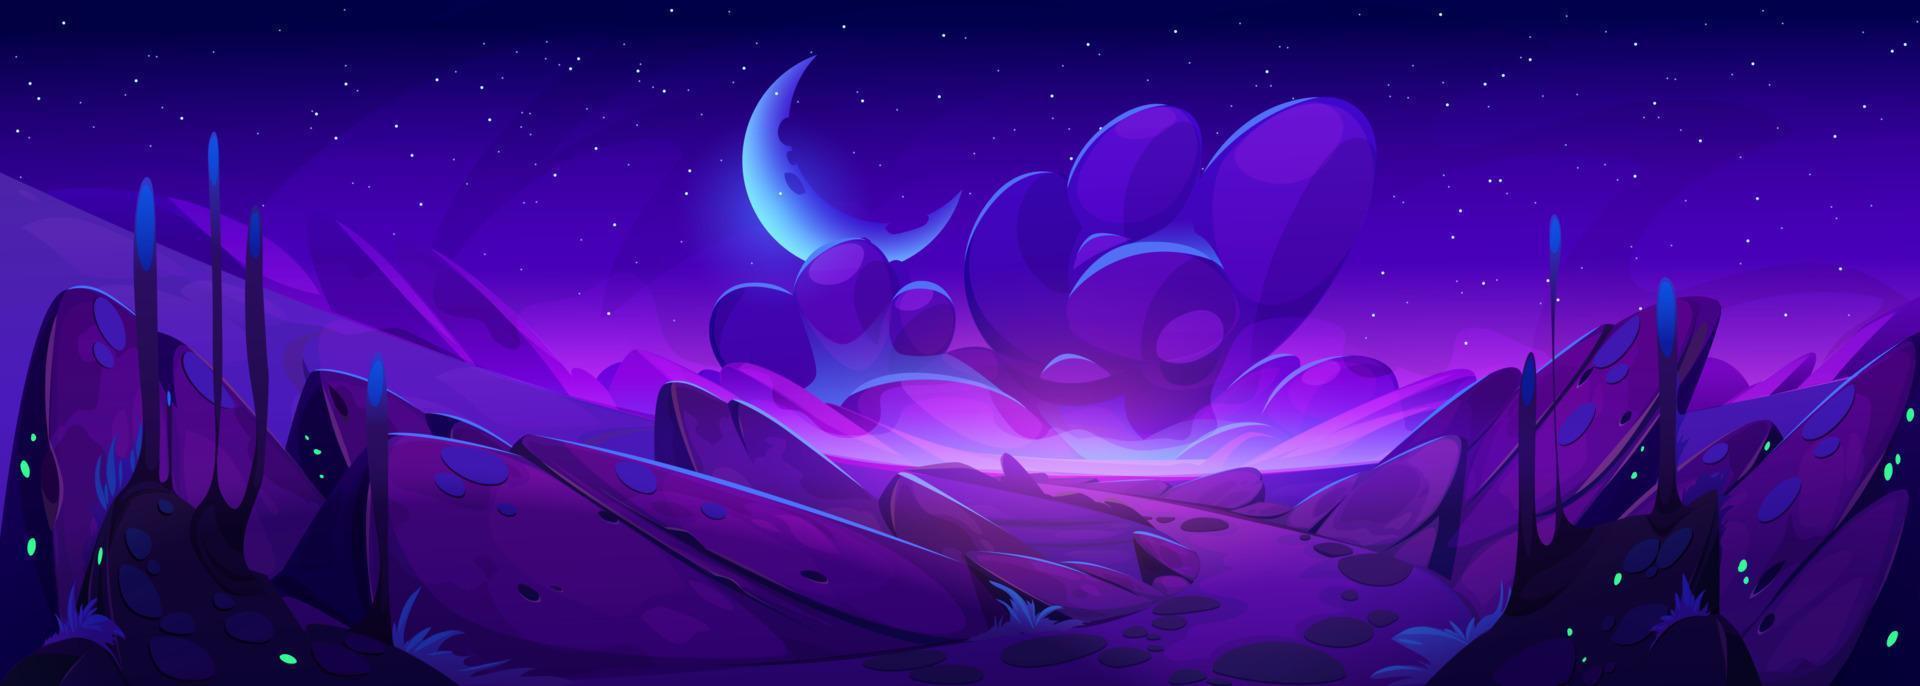 Alien space planet landscape with purple rocks vector